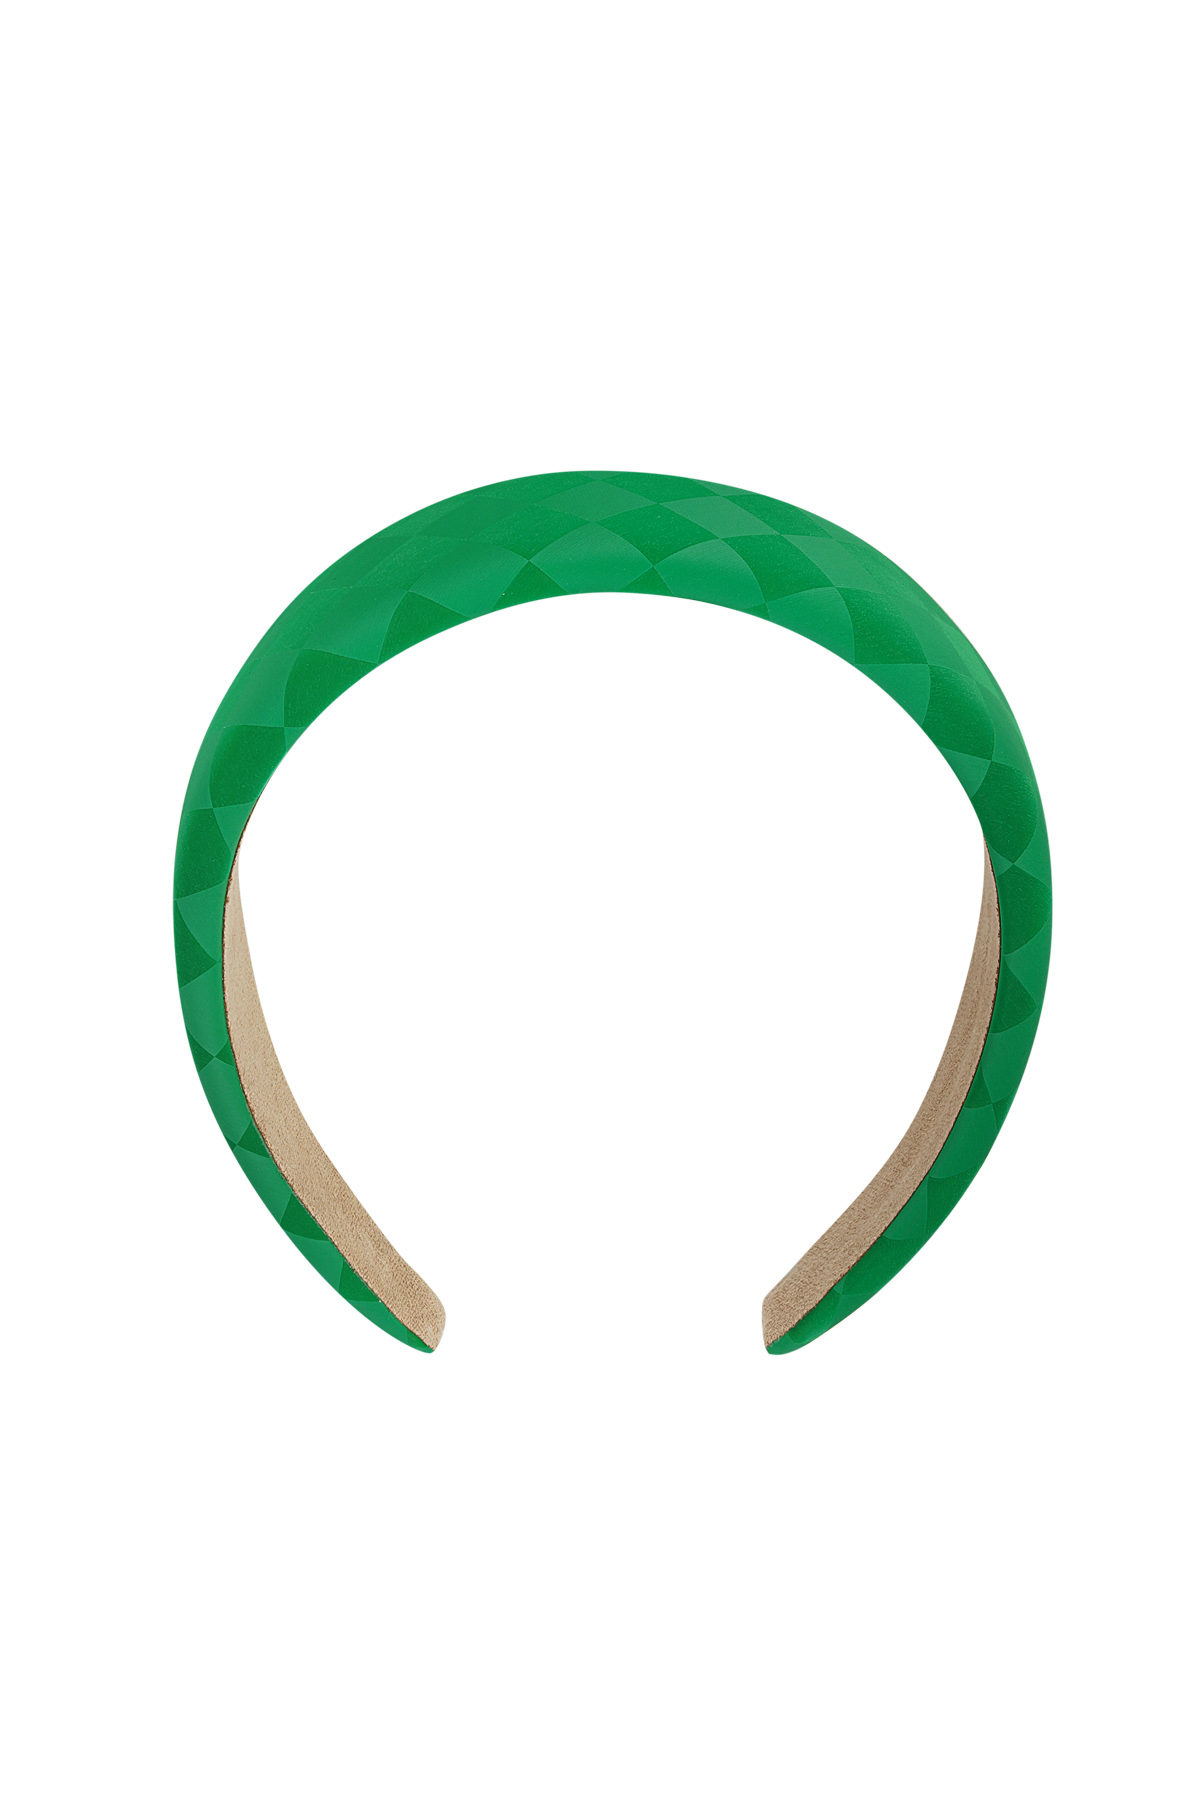 Stirnband mit Rautendetail – grün Kunststoff